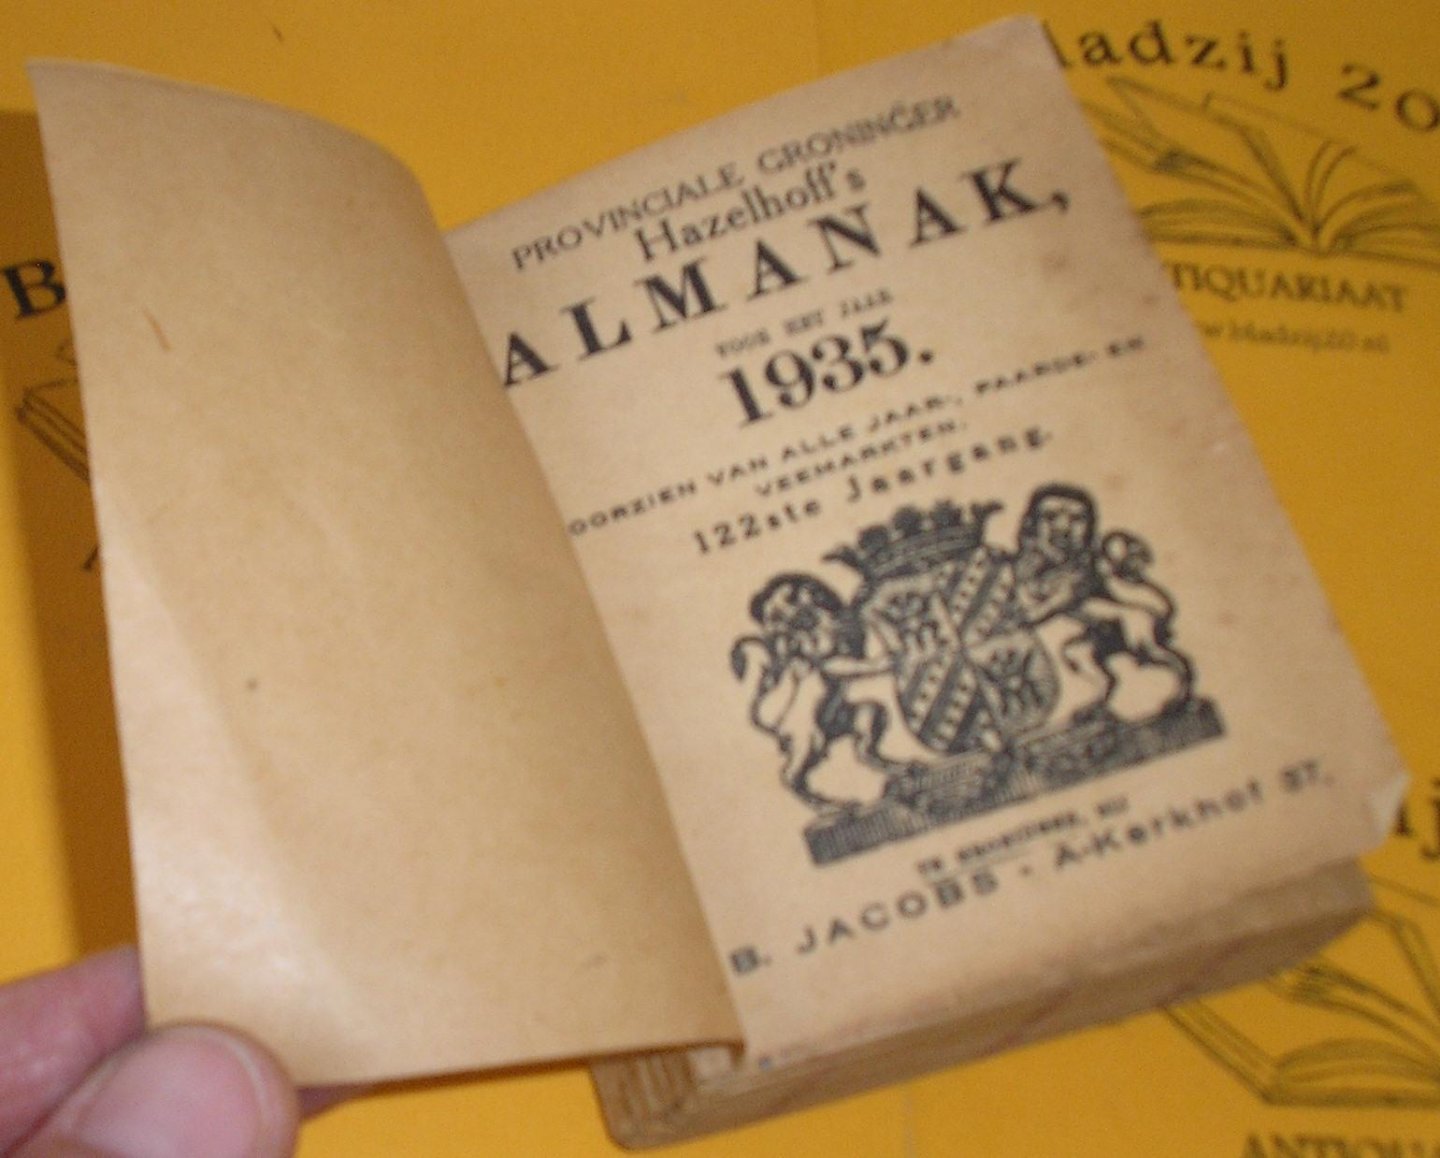 Hazelhoff's Almanak 193. - Provinciale Groninger Hazelhoff's Almanak voor het jaar 1935.